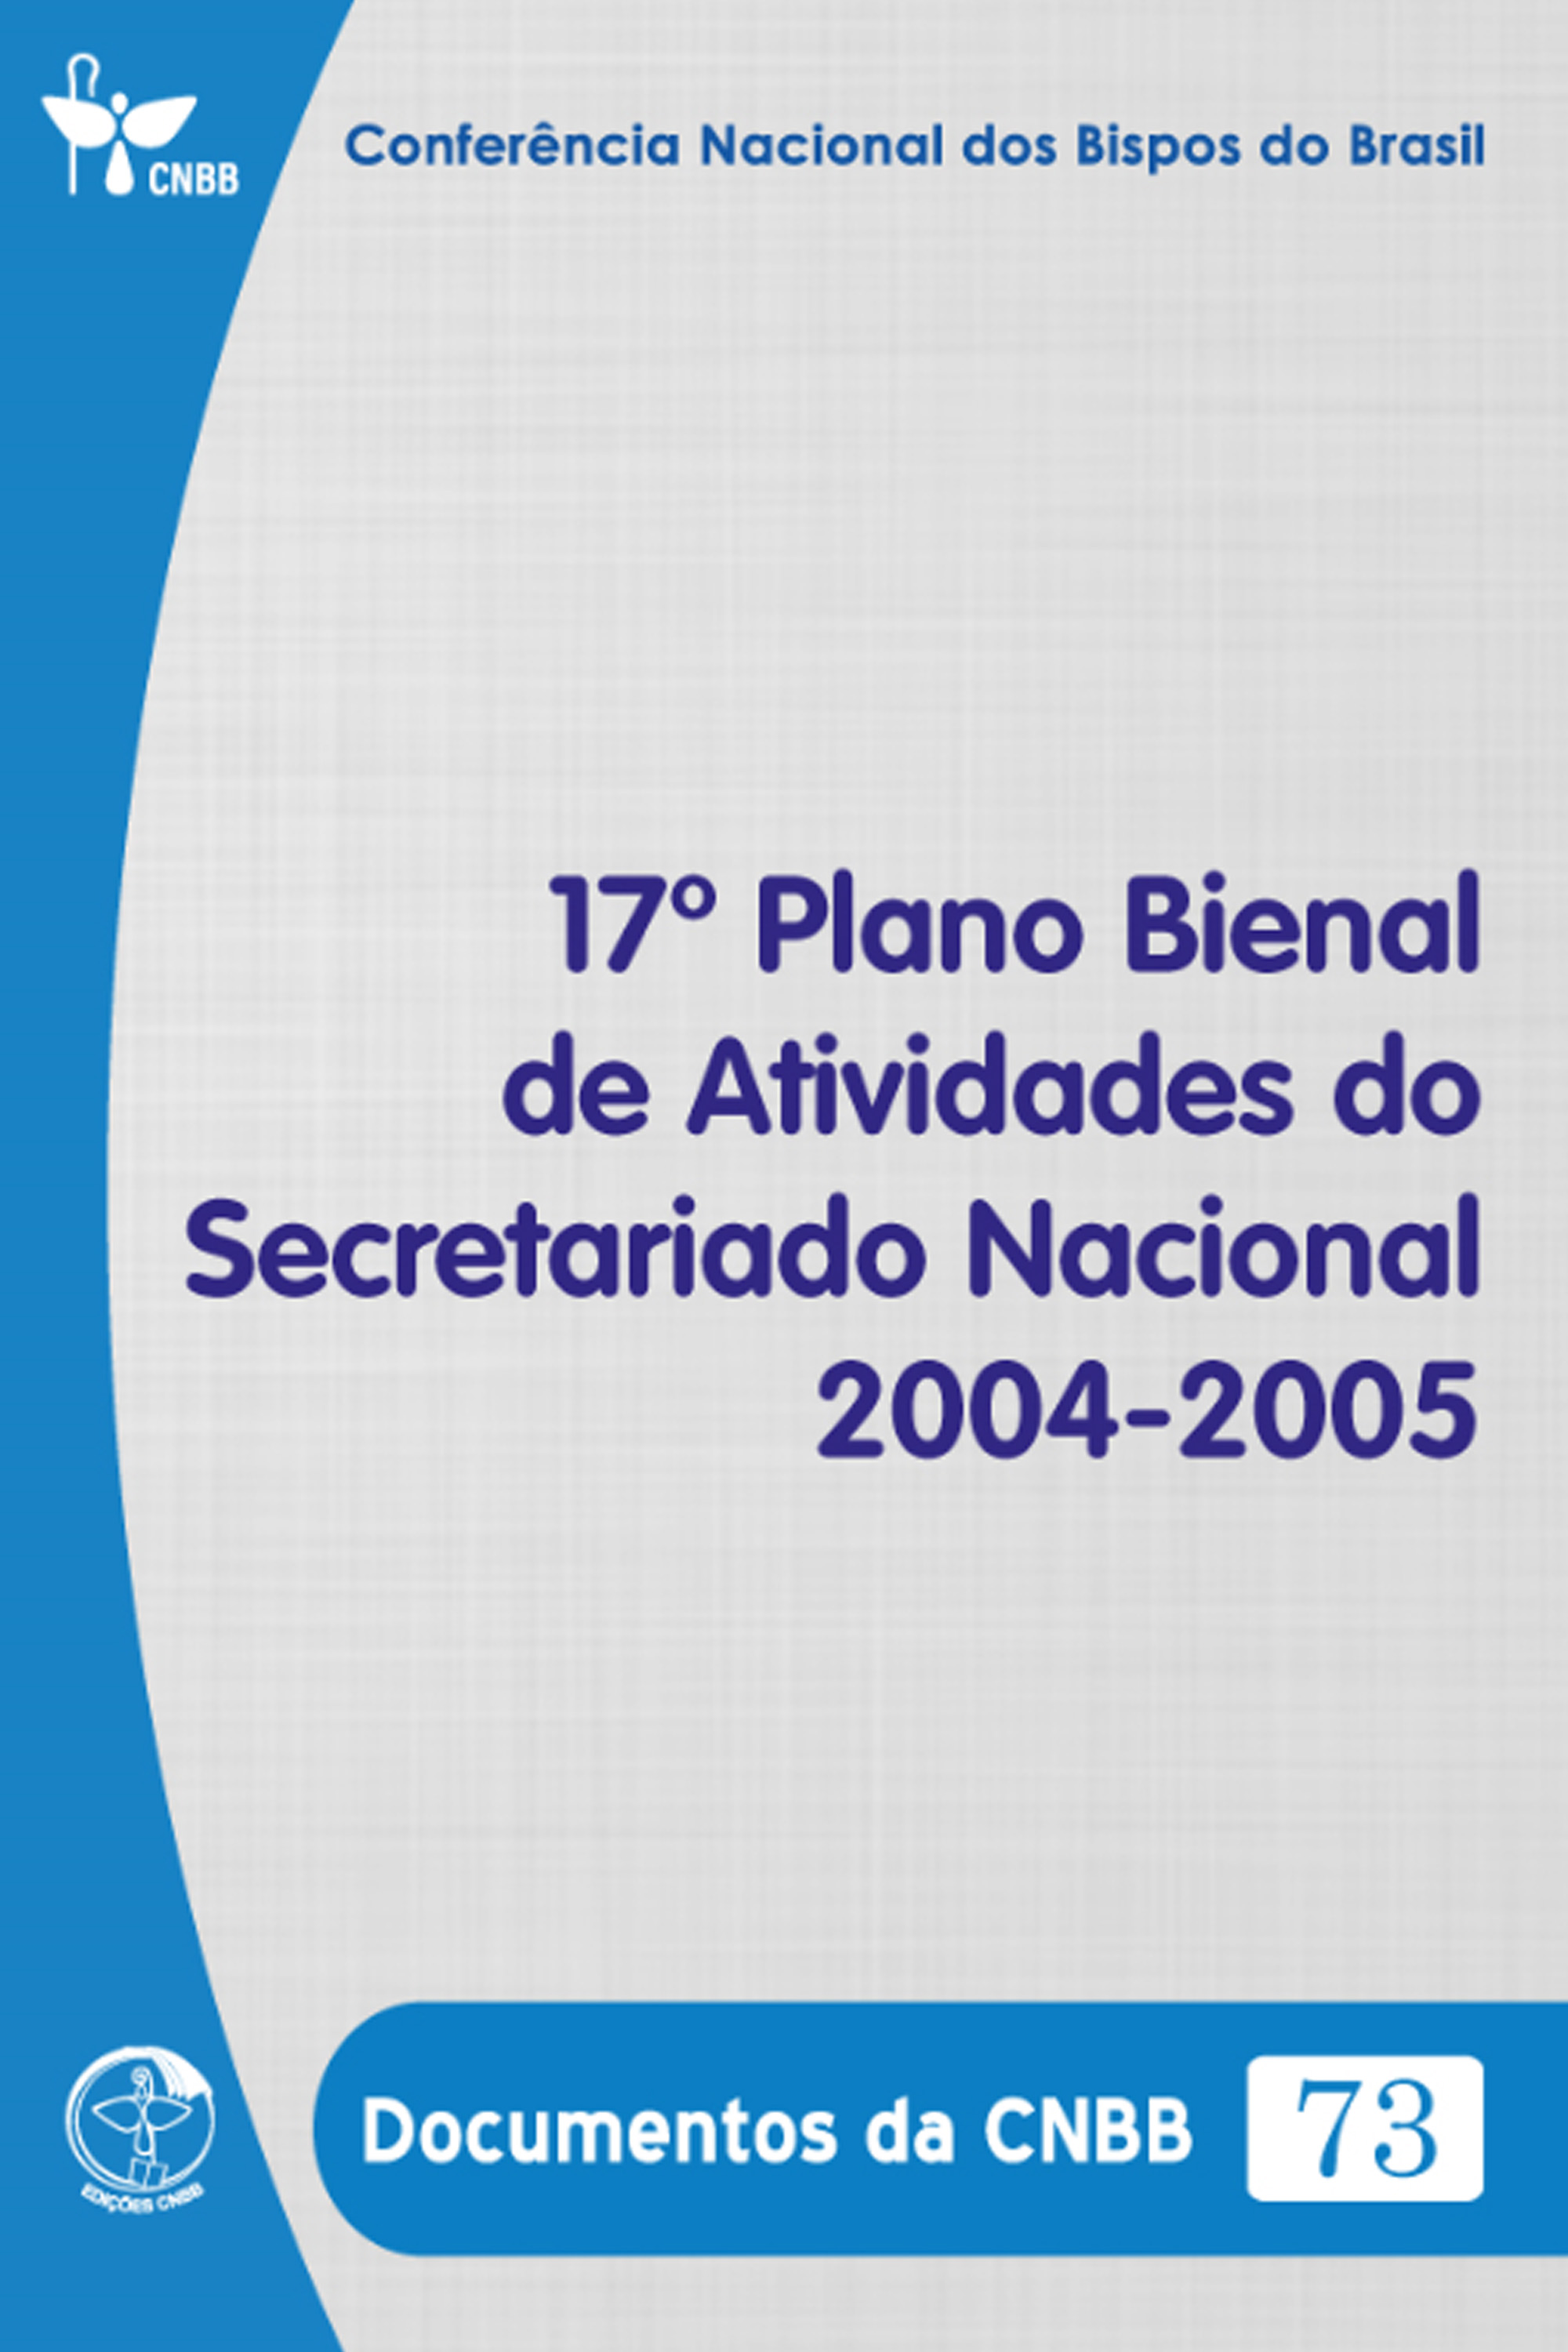 17º Plano Bienal de Atividades do Secretariado Nacional 2004-2005 - Documentos da CNBB 73 - Digital